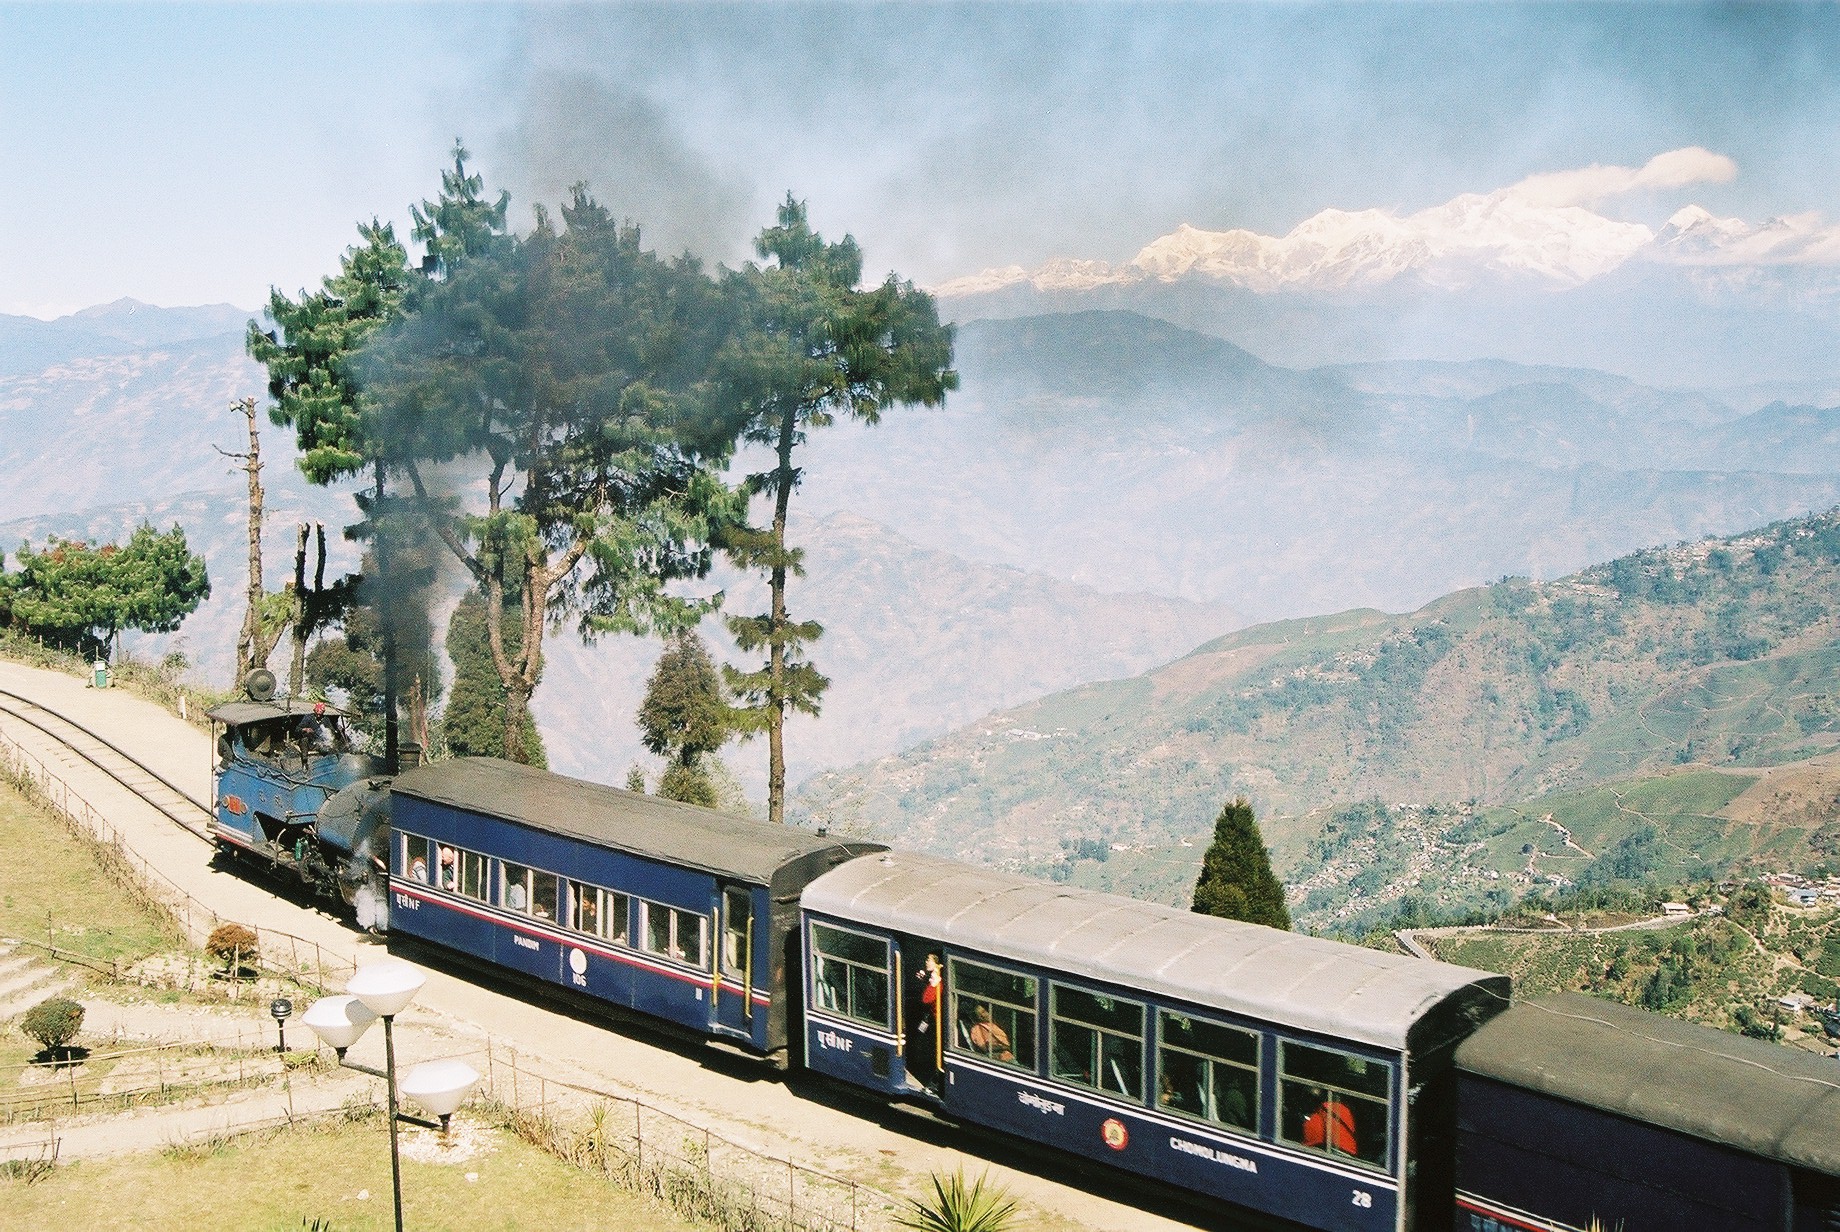 Darjeeling Toy Train courtesy of Wikimedia